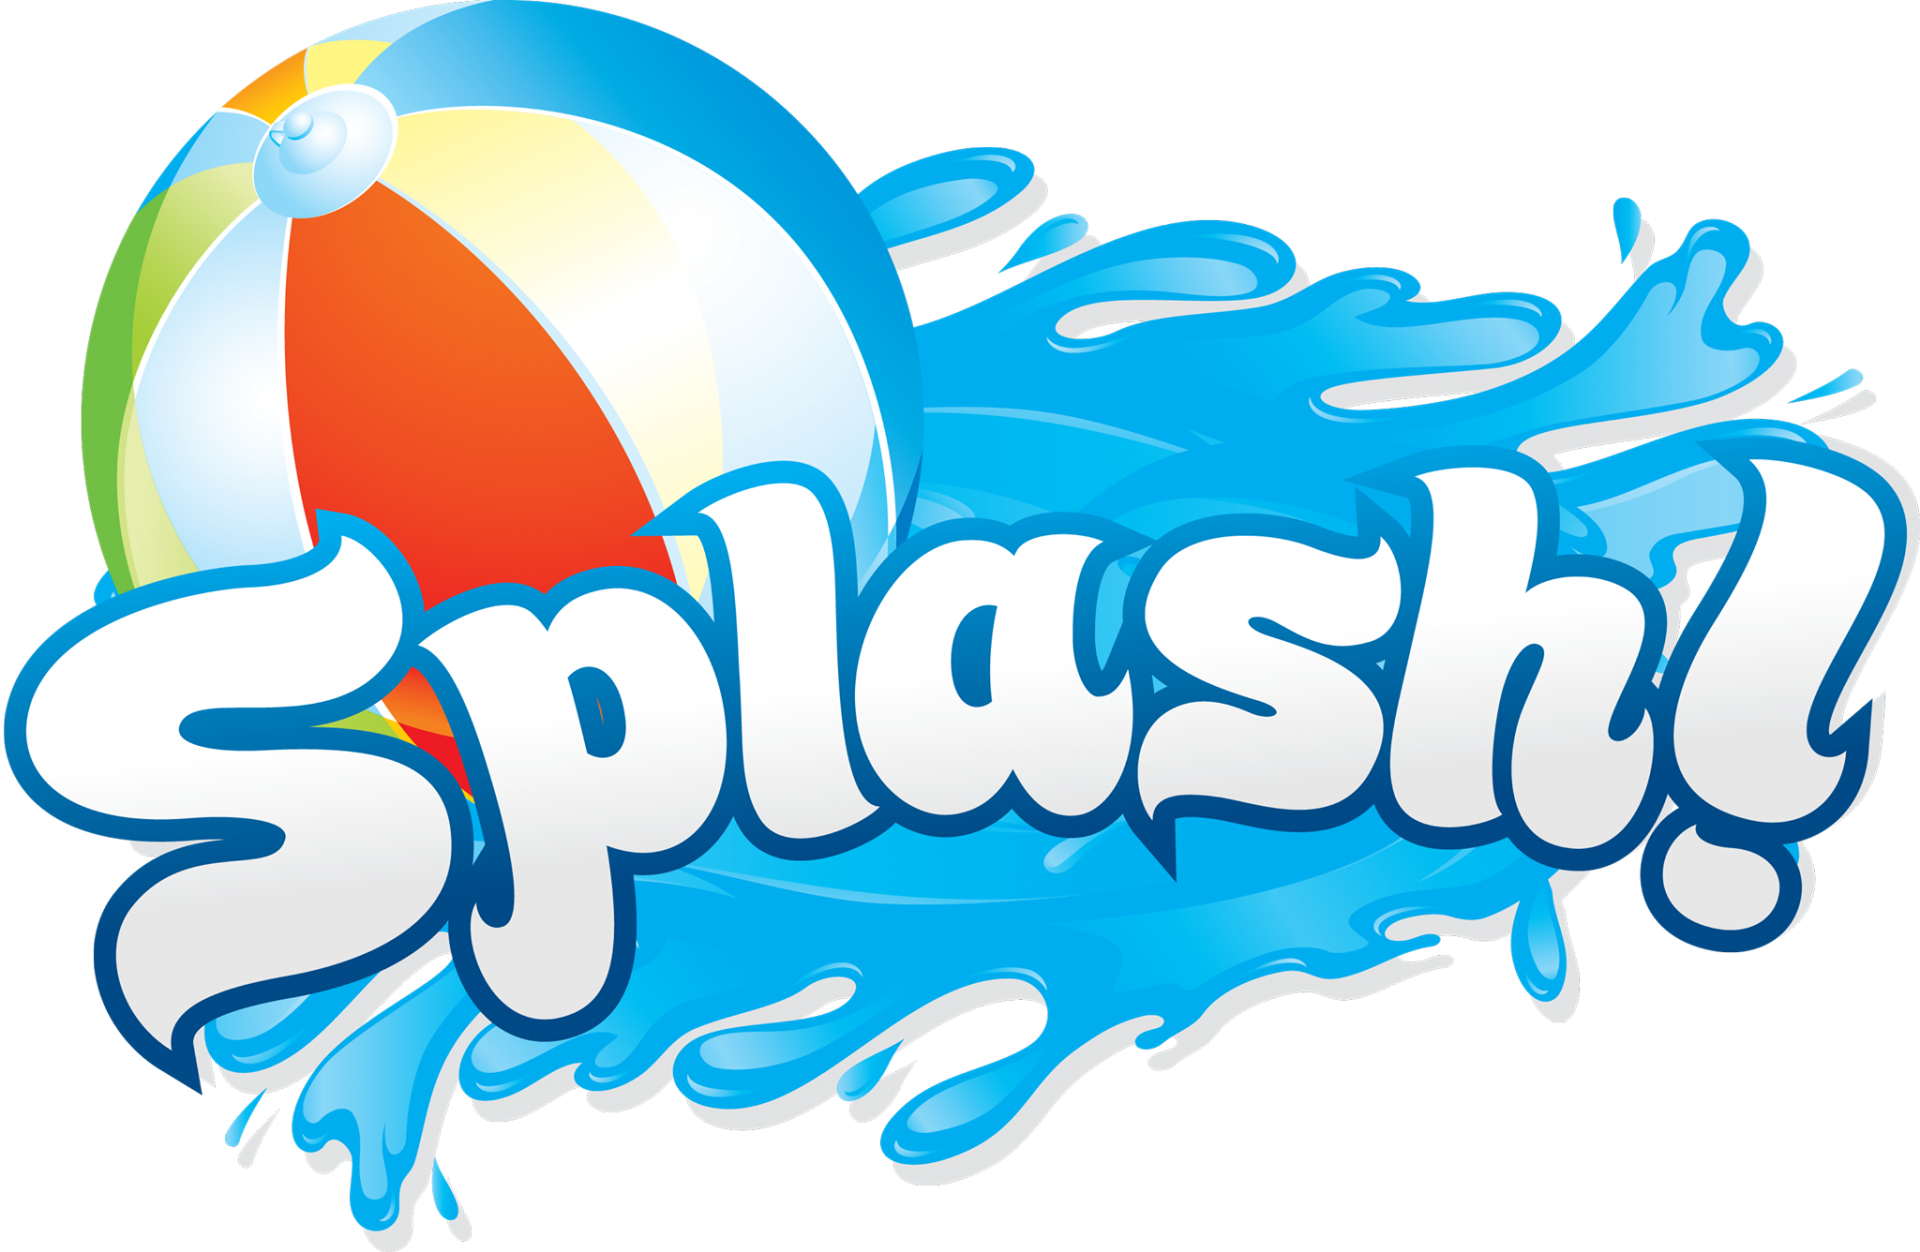 Splash 1